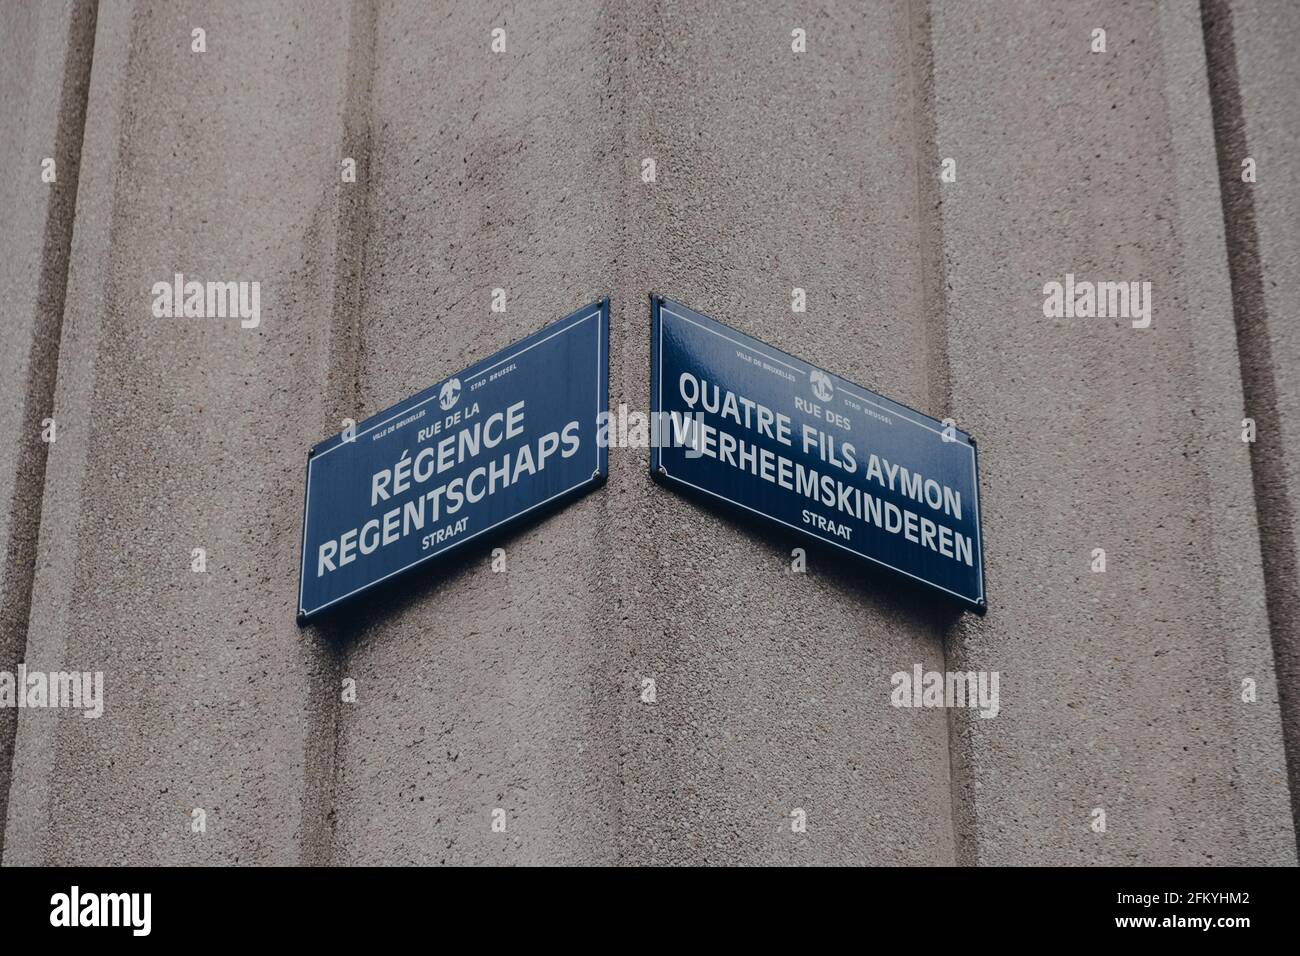 Bruxelles, Belgique - 16 août 2019 : panneaux indiquant les noms de rue à l'angle de la rue de la Régence et de la rue des quatre fils Aymon à Bruxelles, la capitale de BE Banque D'Images